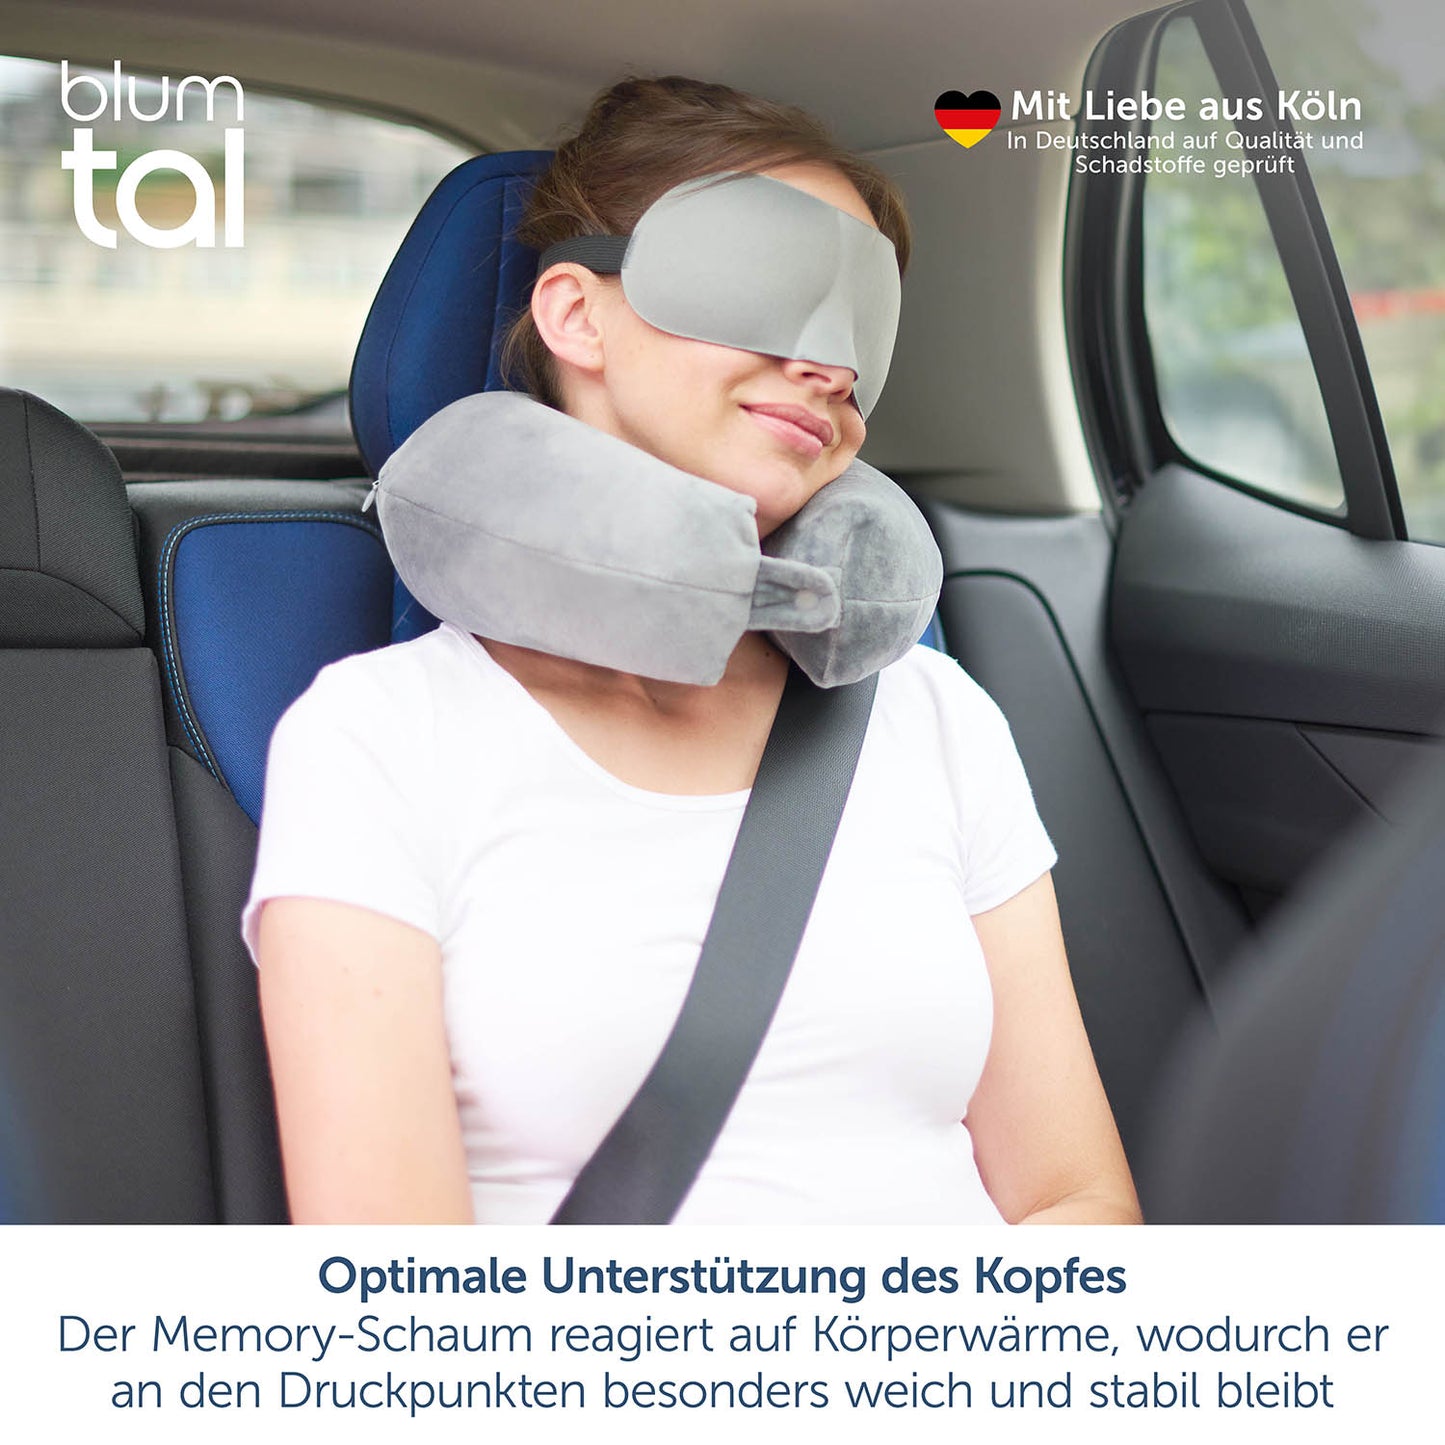 Frau mit grauem Nackenkissen und Schlafmaske entspannt im Autositz, mit Text über Qualitätsprüfung und Memory-Schaum Vorteilen.